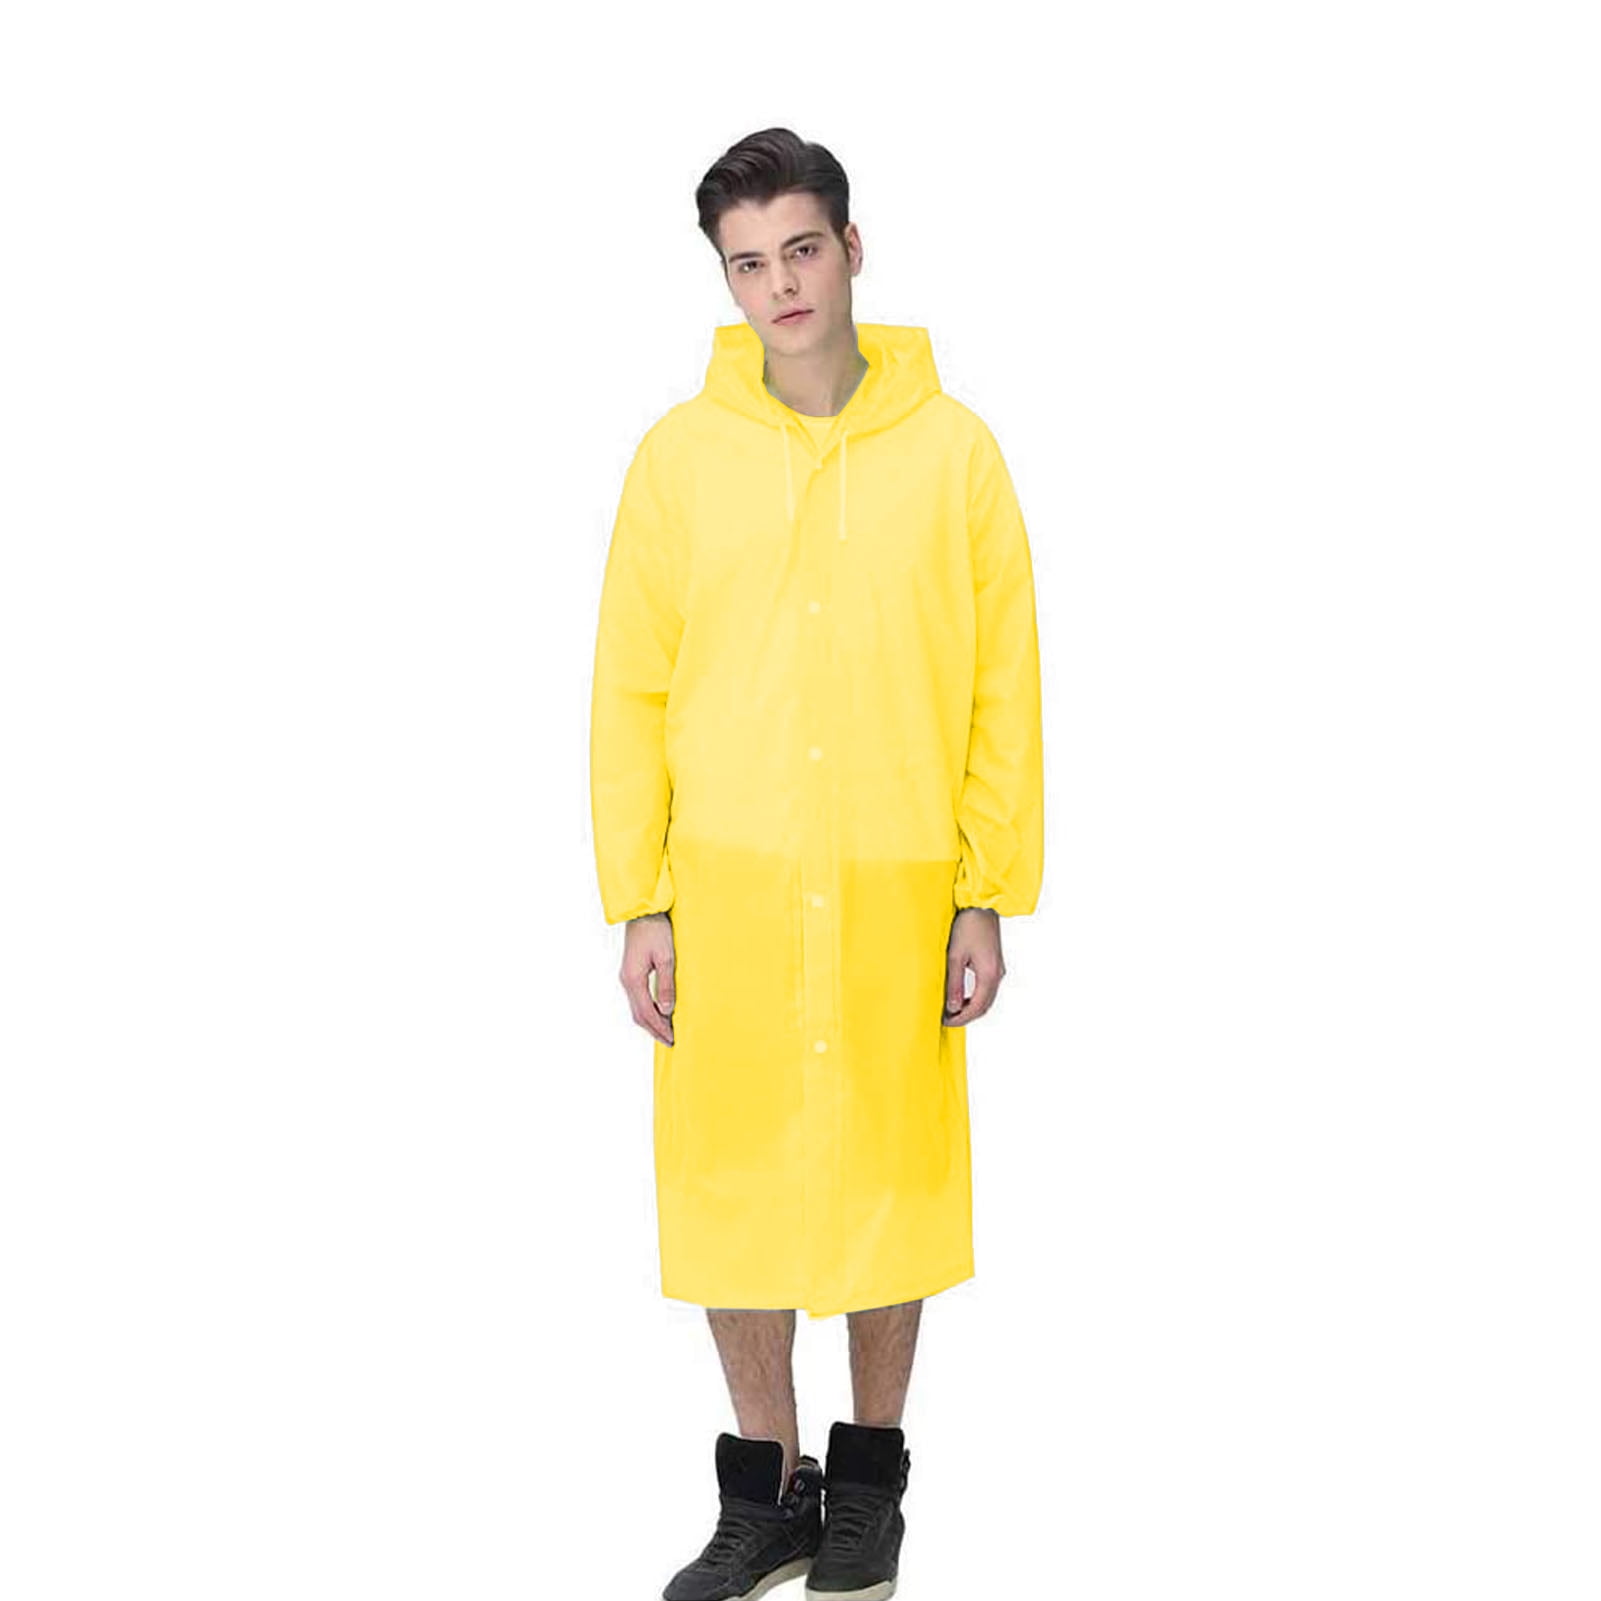 Details about   Hooded Ponchos Disposable Raincoat For Men Women Travel Portable Rain Wear Suits 